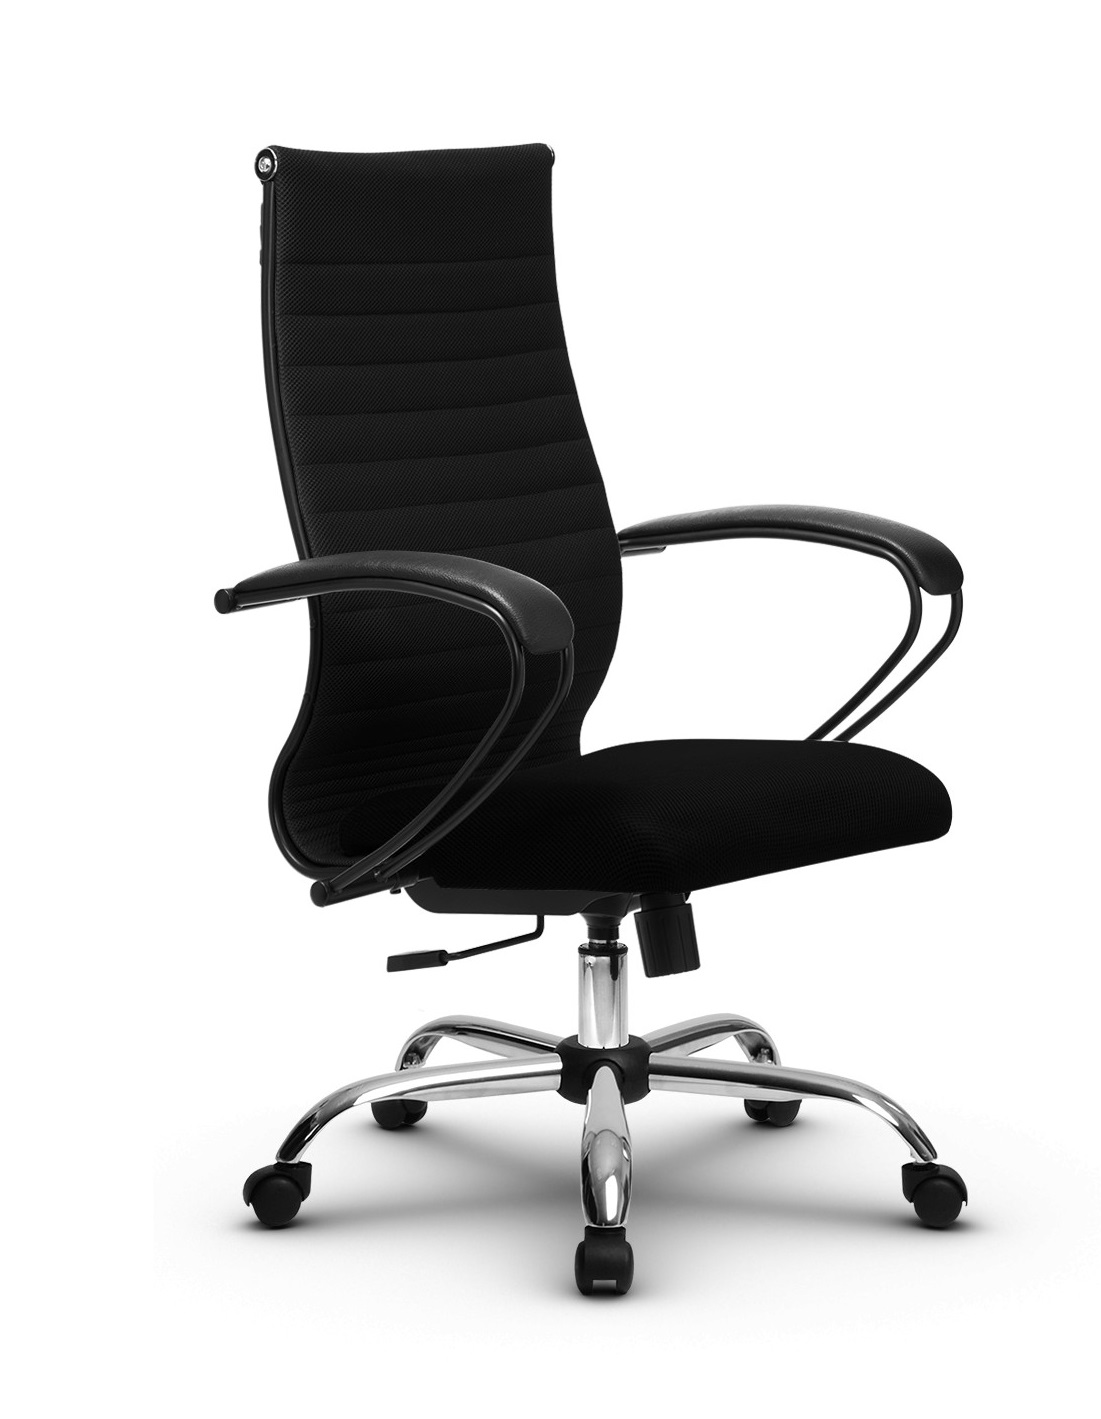 МЕТТА комплект 19 Сh (MPRU)/подл.130/осн.003 кресло офисное (МТ) (черный)